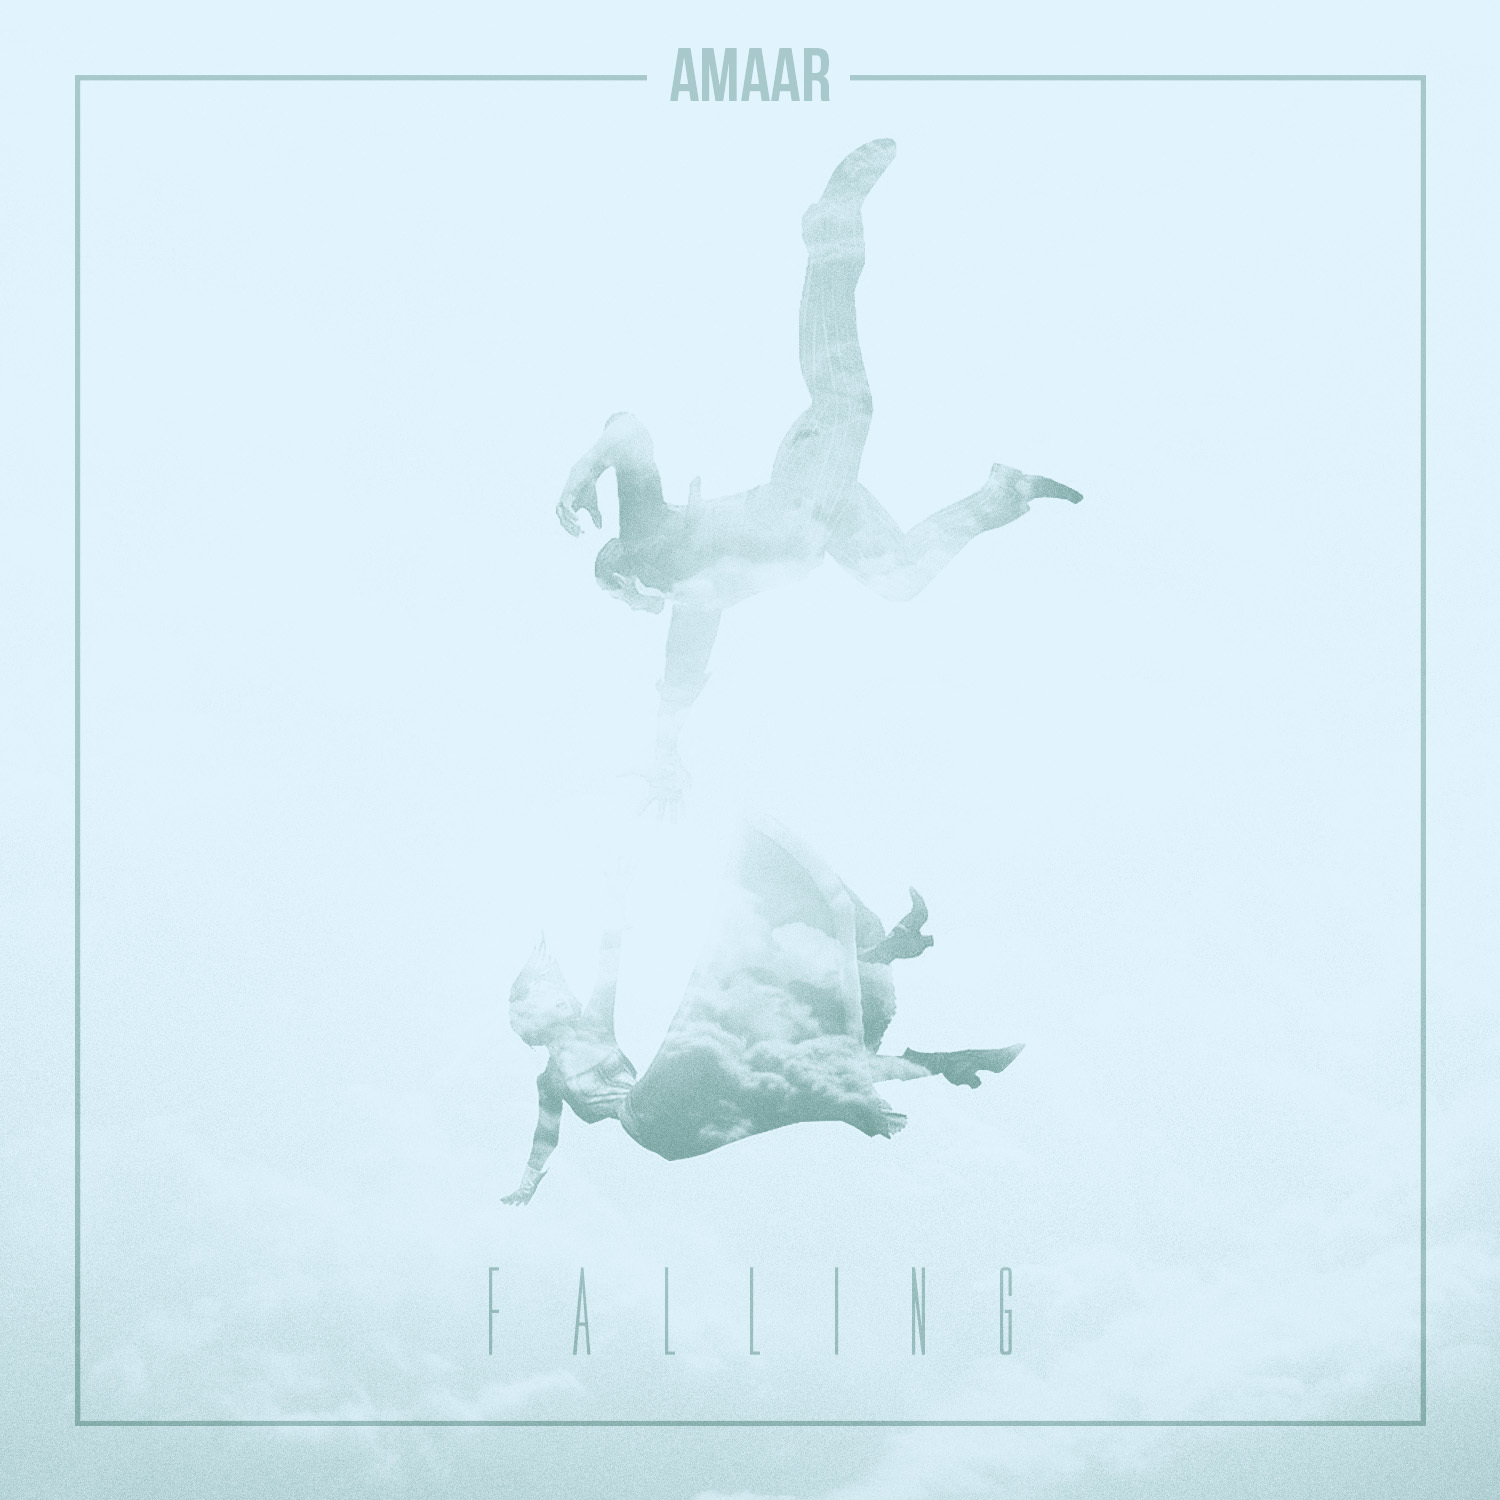 Amaar - Falling [Thizzler.com]